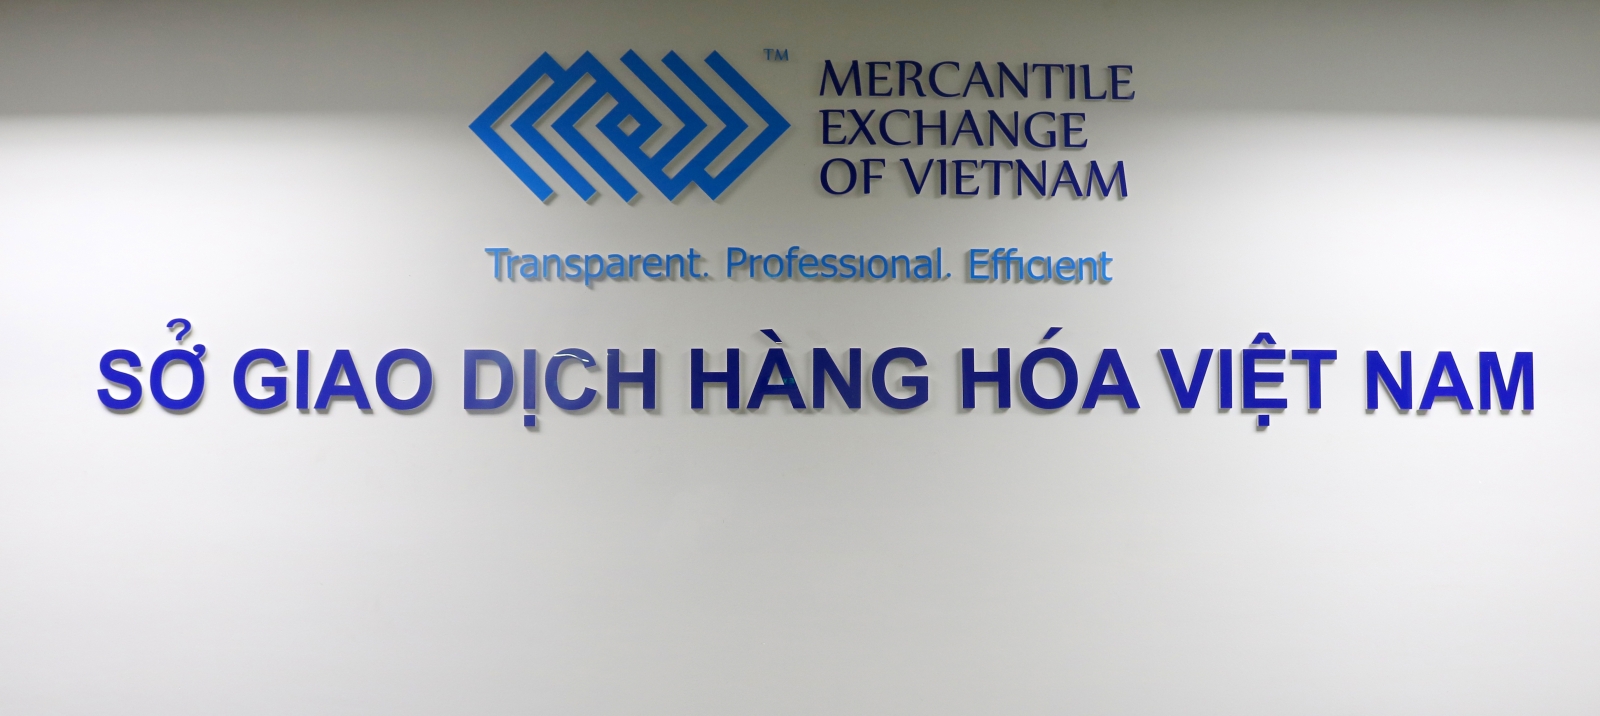 Sở Giao dịch Hàng hóa Việt Nam (MXV) bổ sung giao dịch thêm mặt hàng Dầu cọ thô liên thông với Sở Bursa, Malaysia